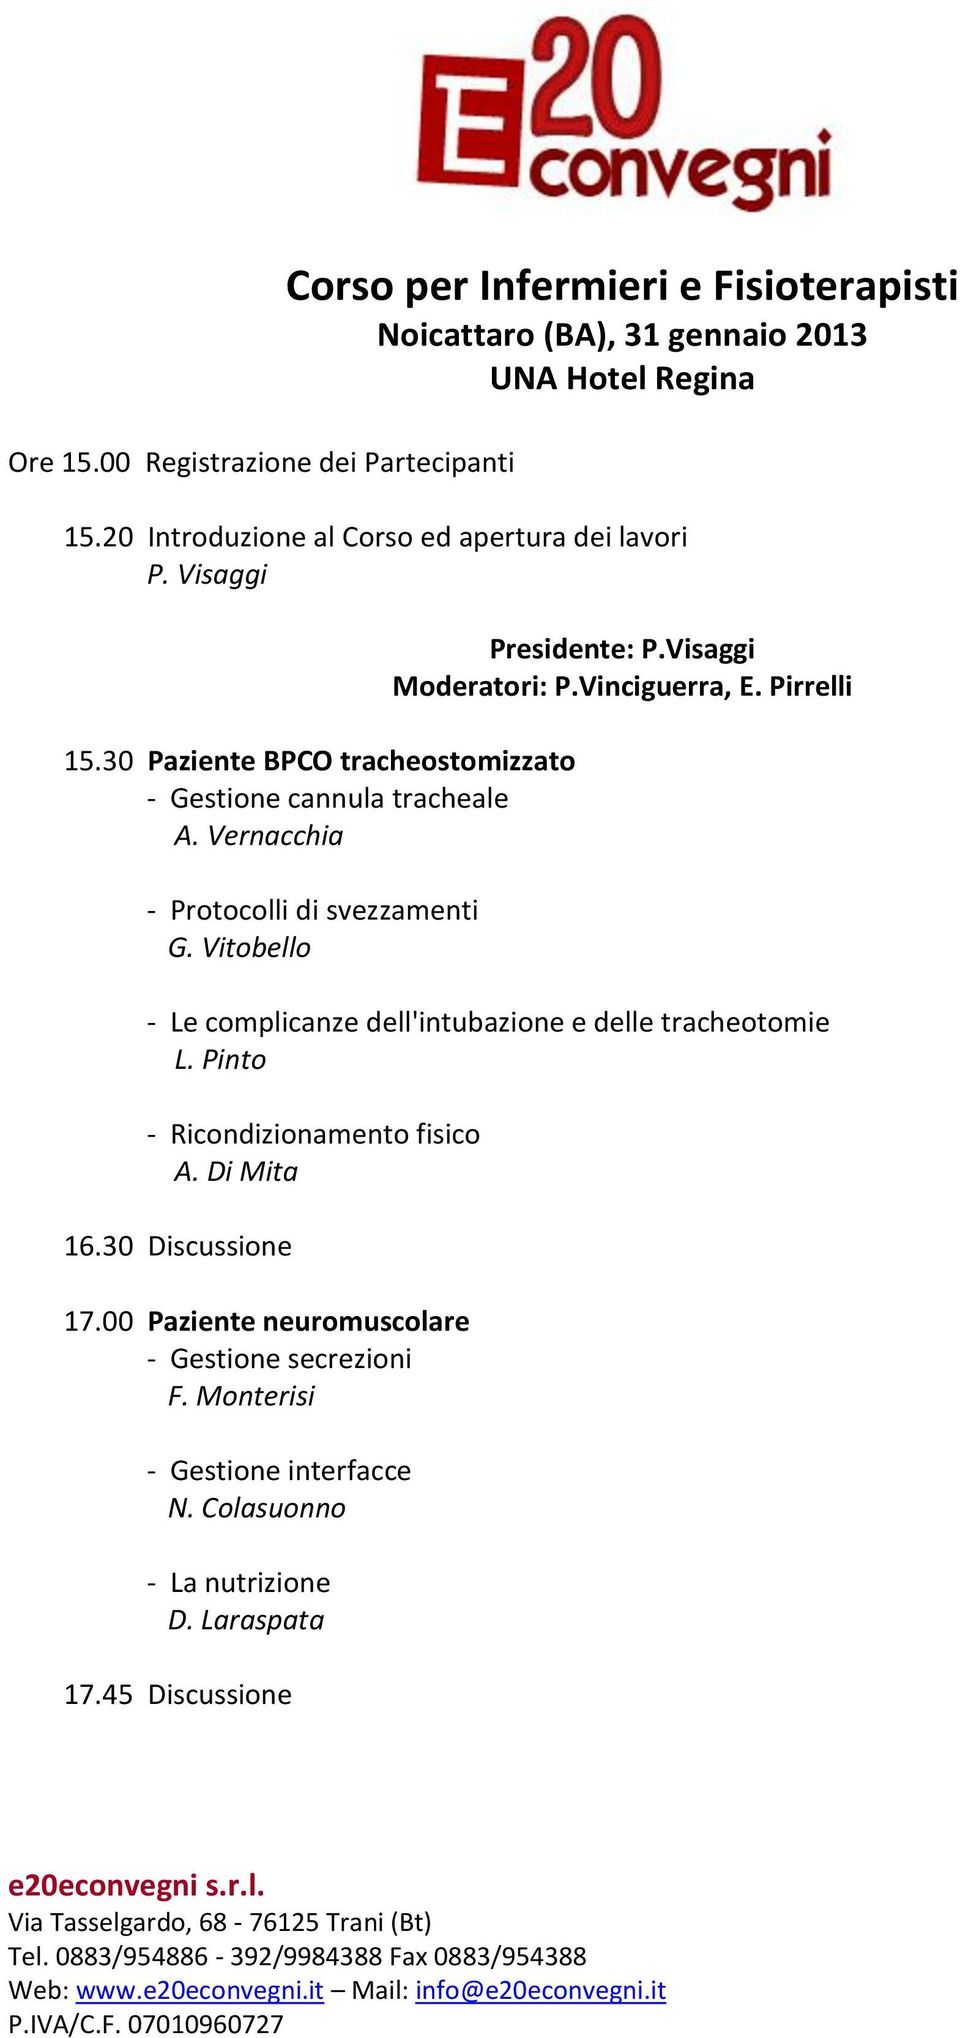 Vernacchia - Protocolli di svezzamenti G. Vitobello Presidente: P.Visaggi Moderatori: P.Vinciguerra, E.